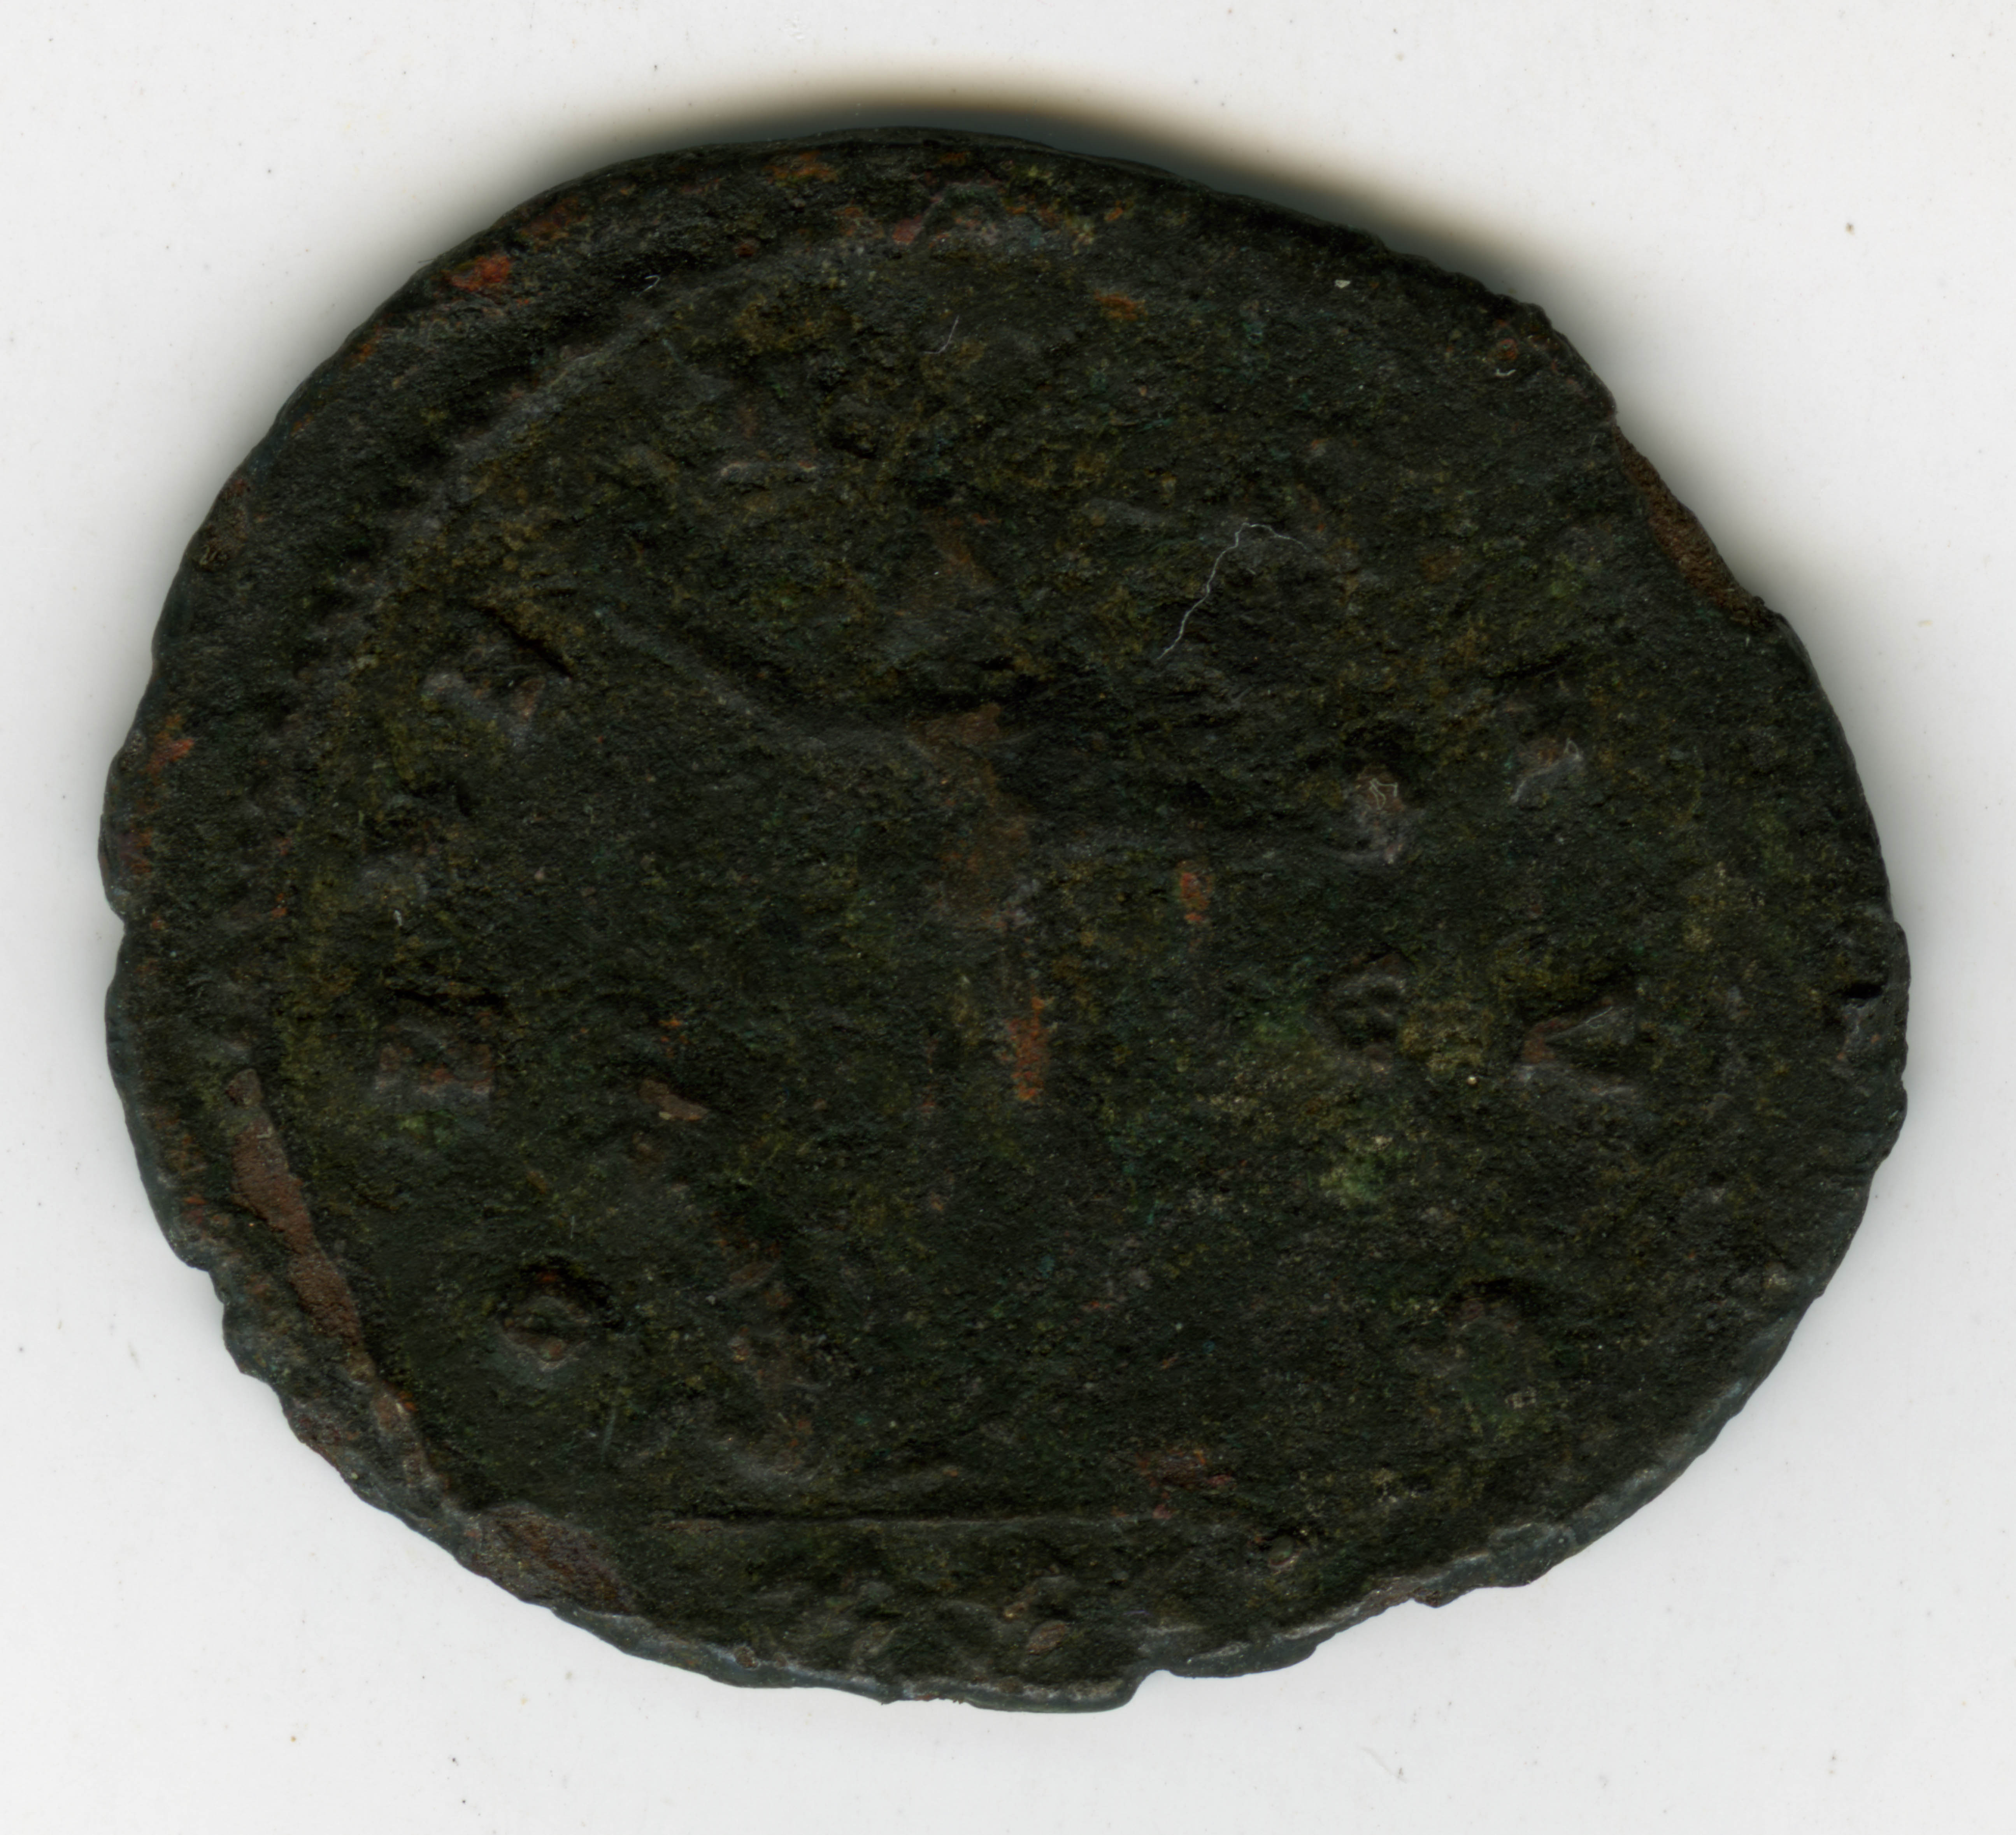 Auben Gray Burkhart Collection, Coin 022 